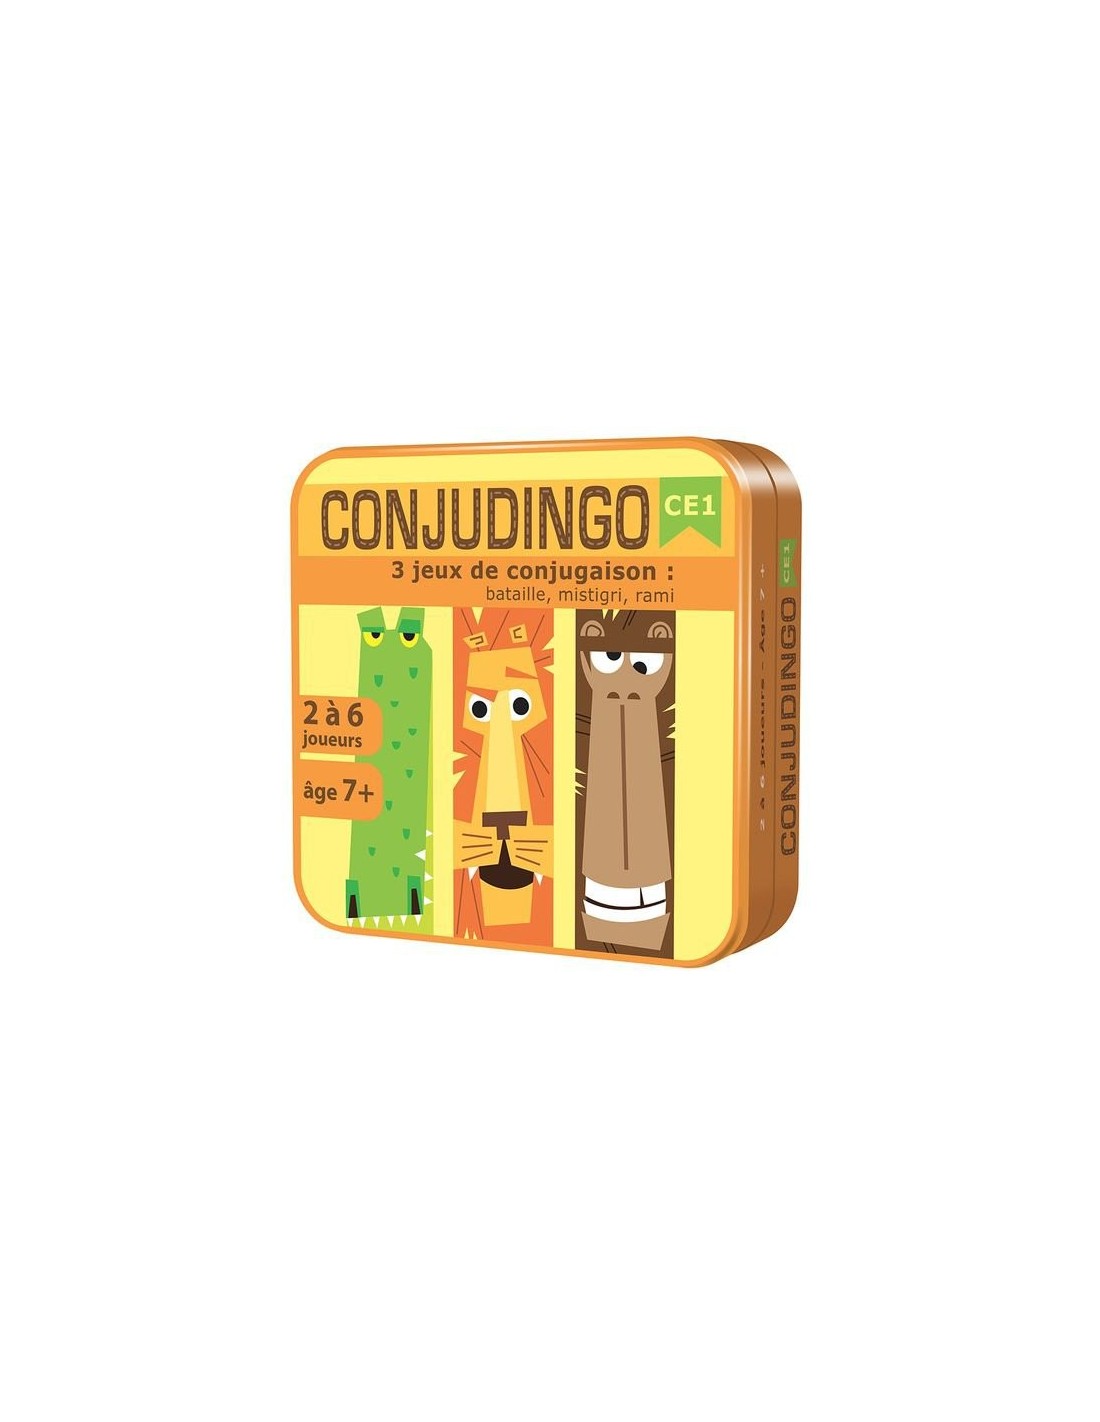 CONJUDINGO